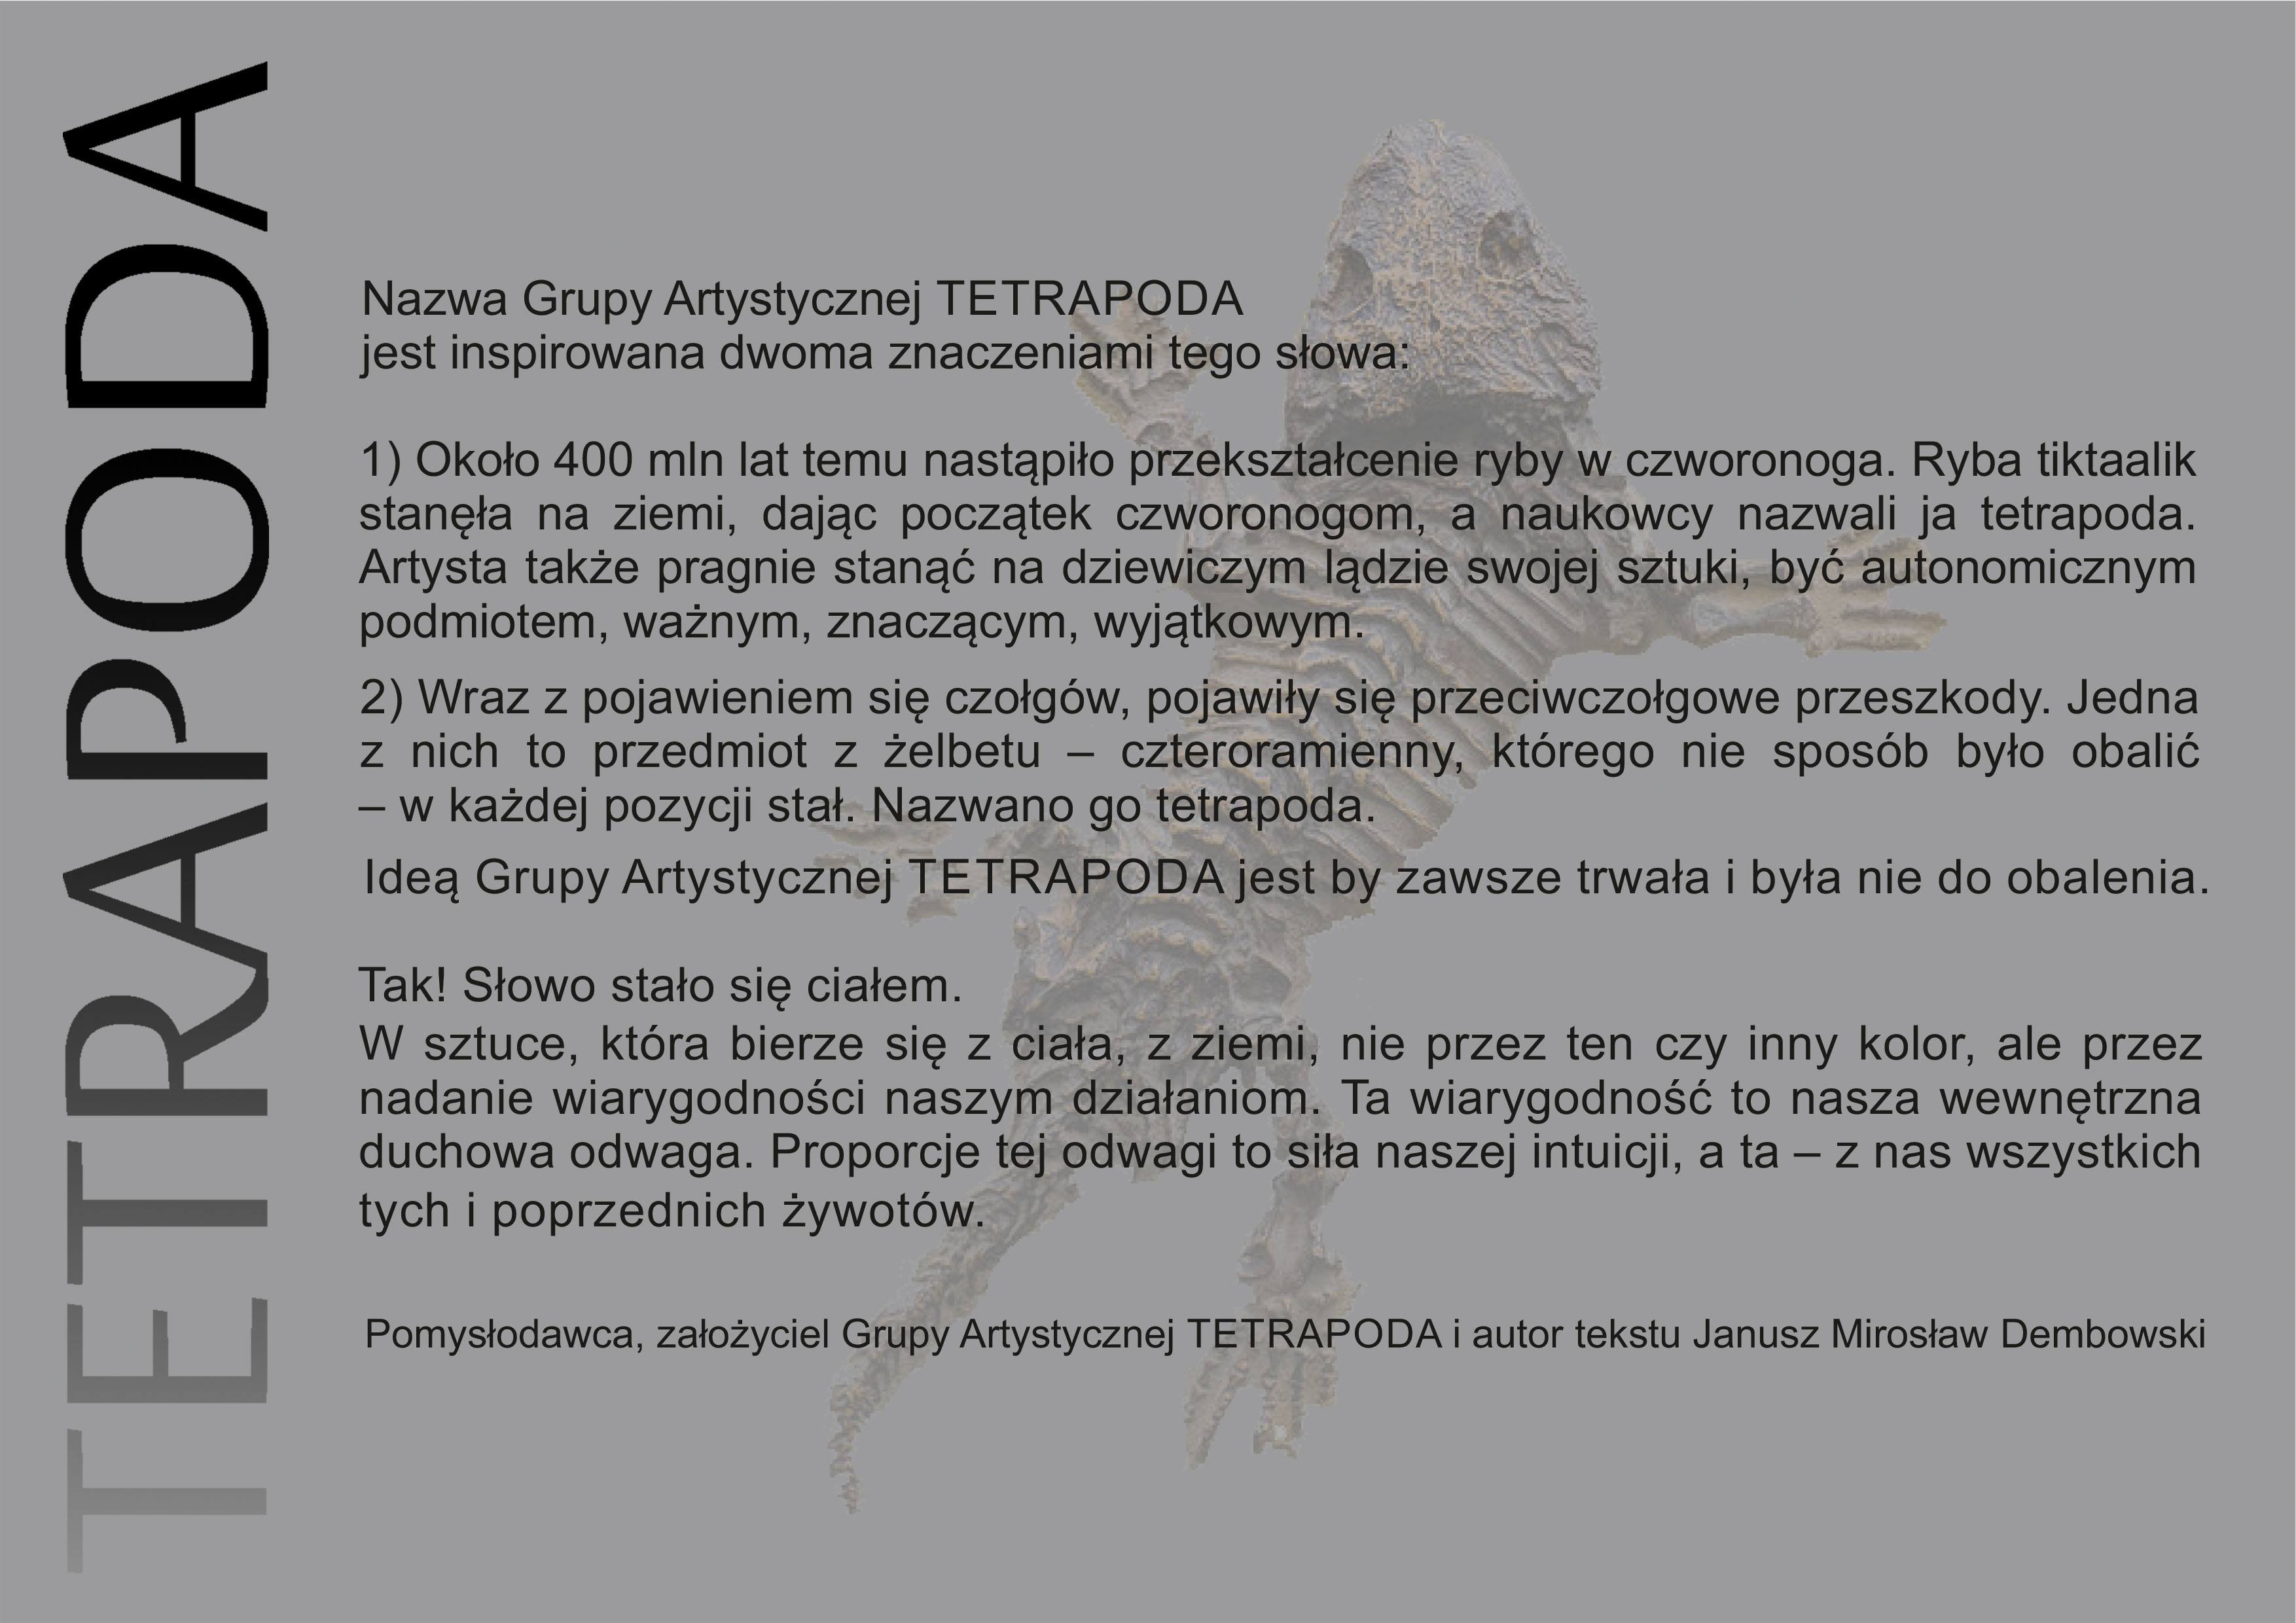 Wystawa pt. “Tetrapoda”. Anna Wysocka, Janusz Dembowski, Wojciech Kozioł